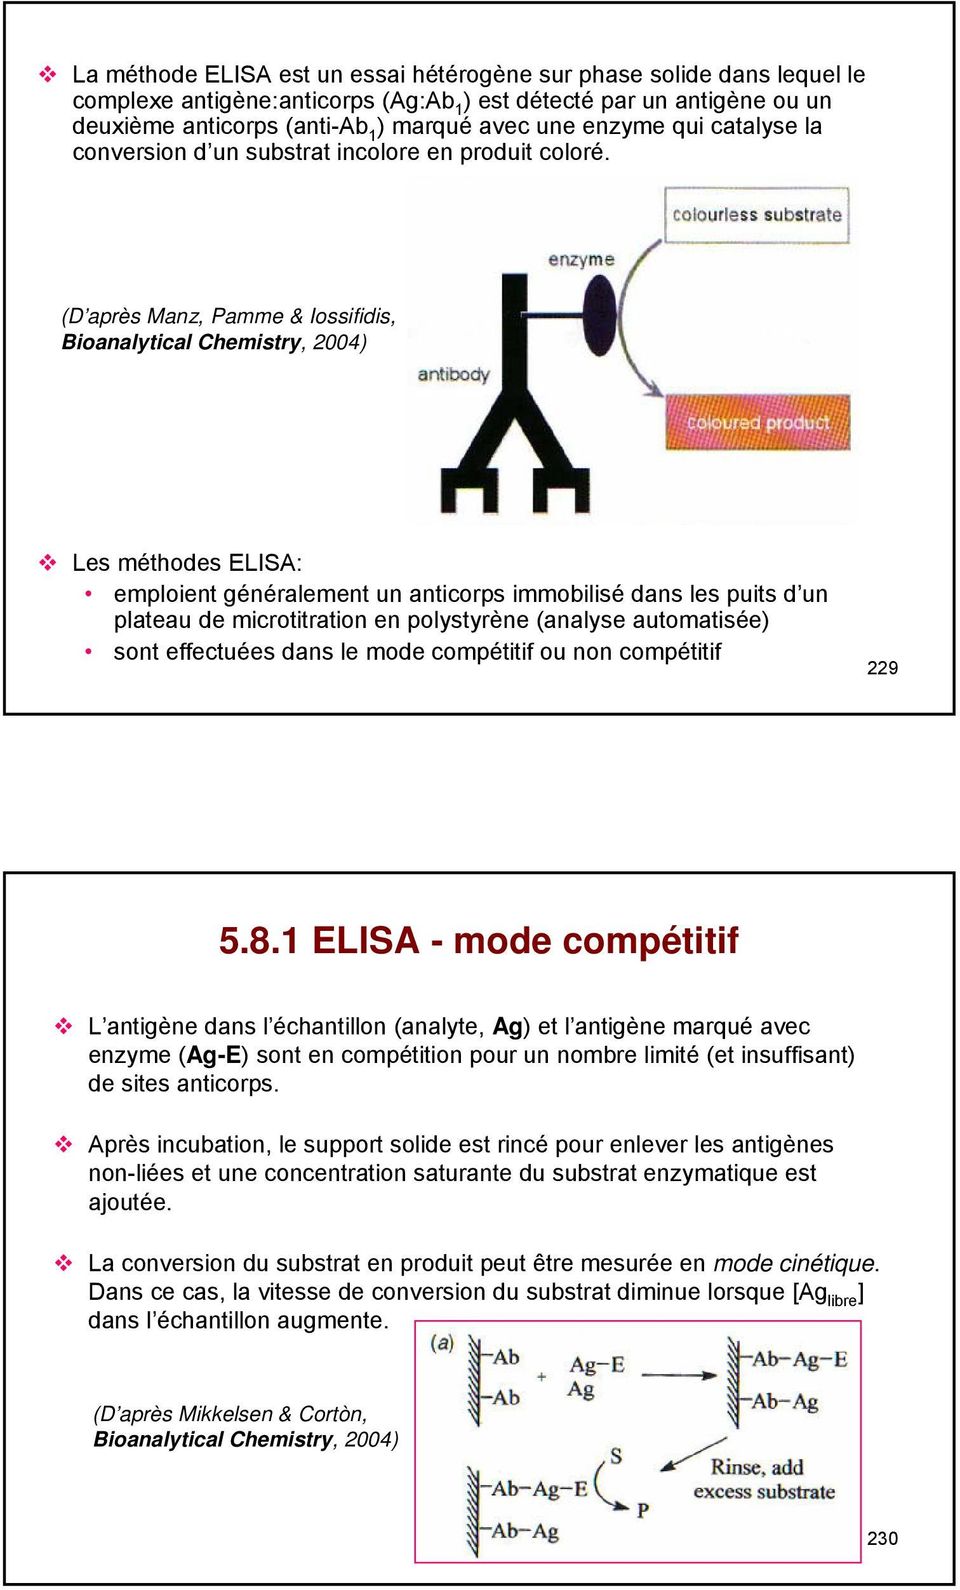 (D après Manz, Pamme & Iossifidis, Bioanalytical Chemistry, 2004) Les méthodes ELISA: emploient généralement un anticorps immobilisé dans les puits d un plateau de microtitration en polystyrène